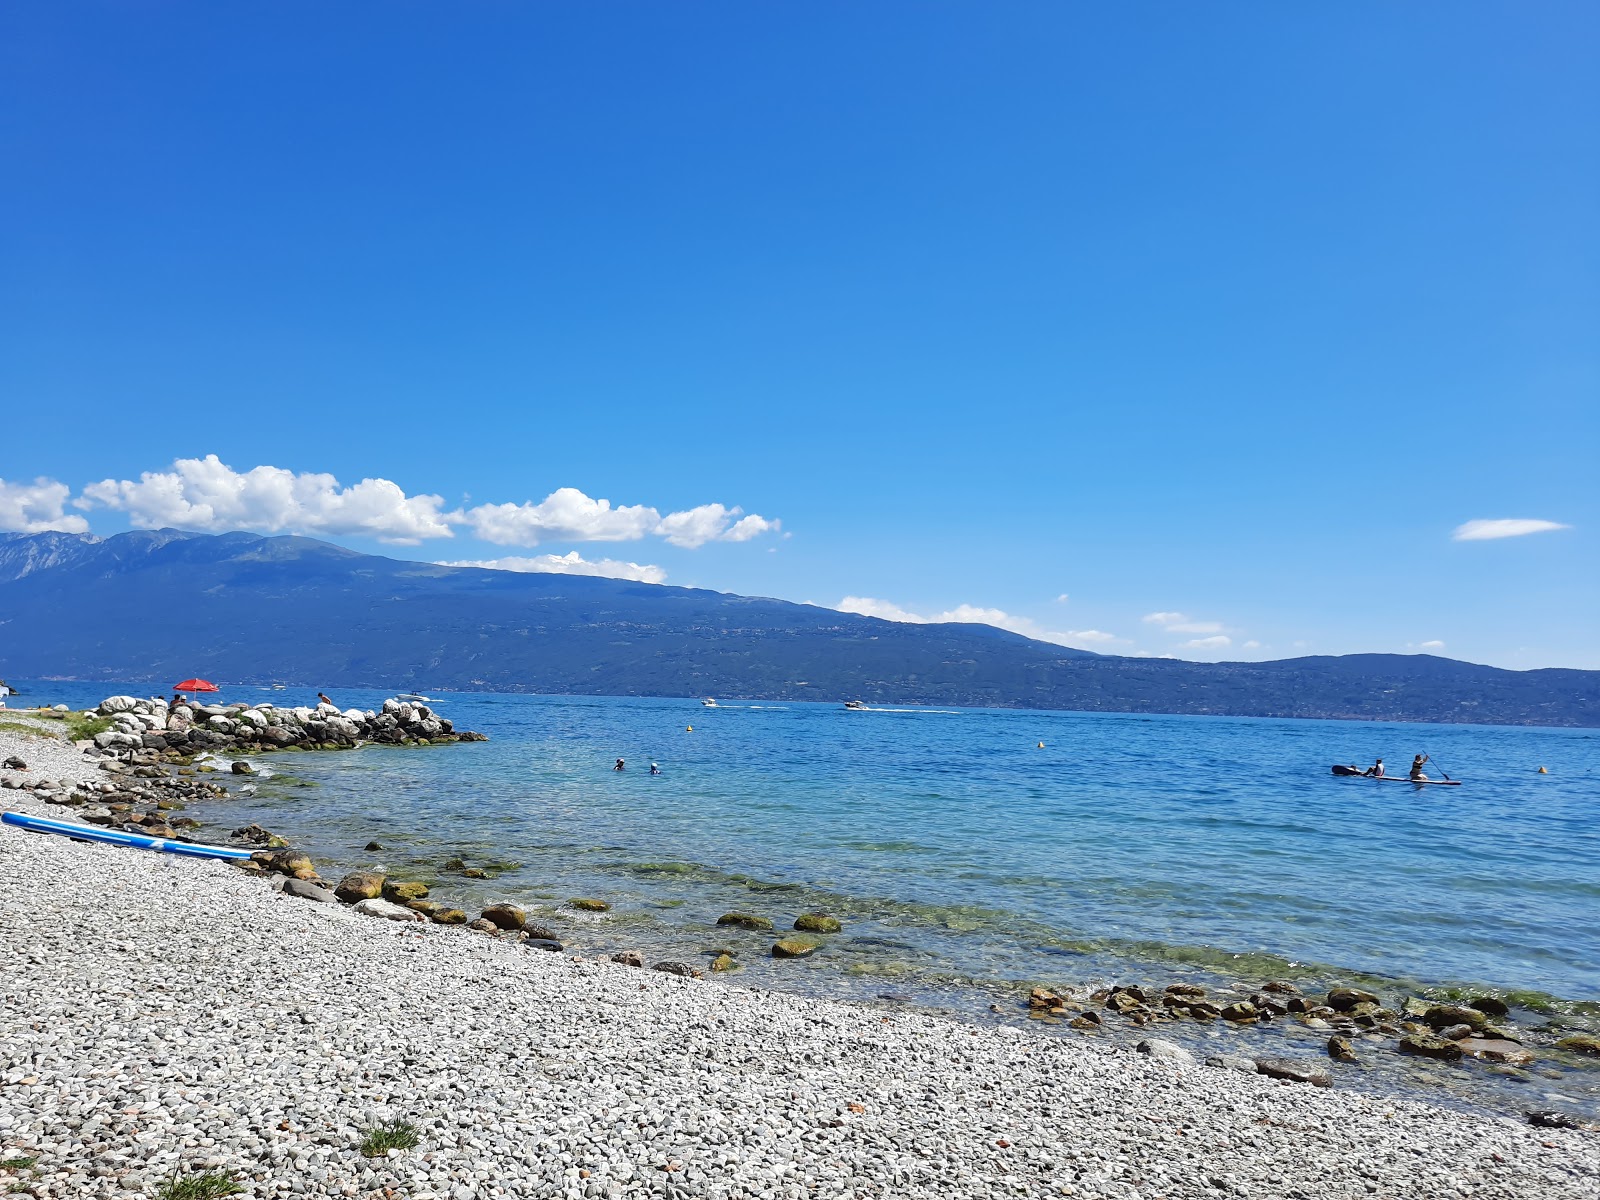 Spiaggia Toscolano'in fotoğrafı geniş plaj ile birlikte